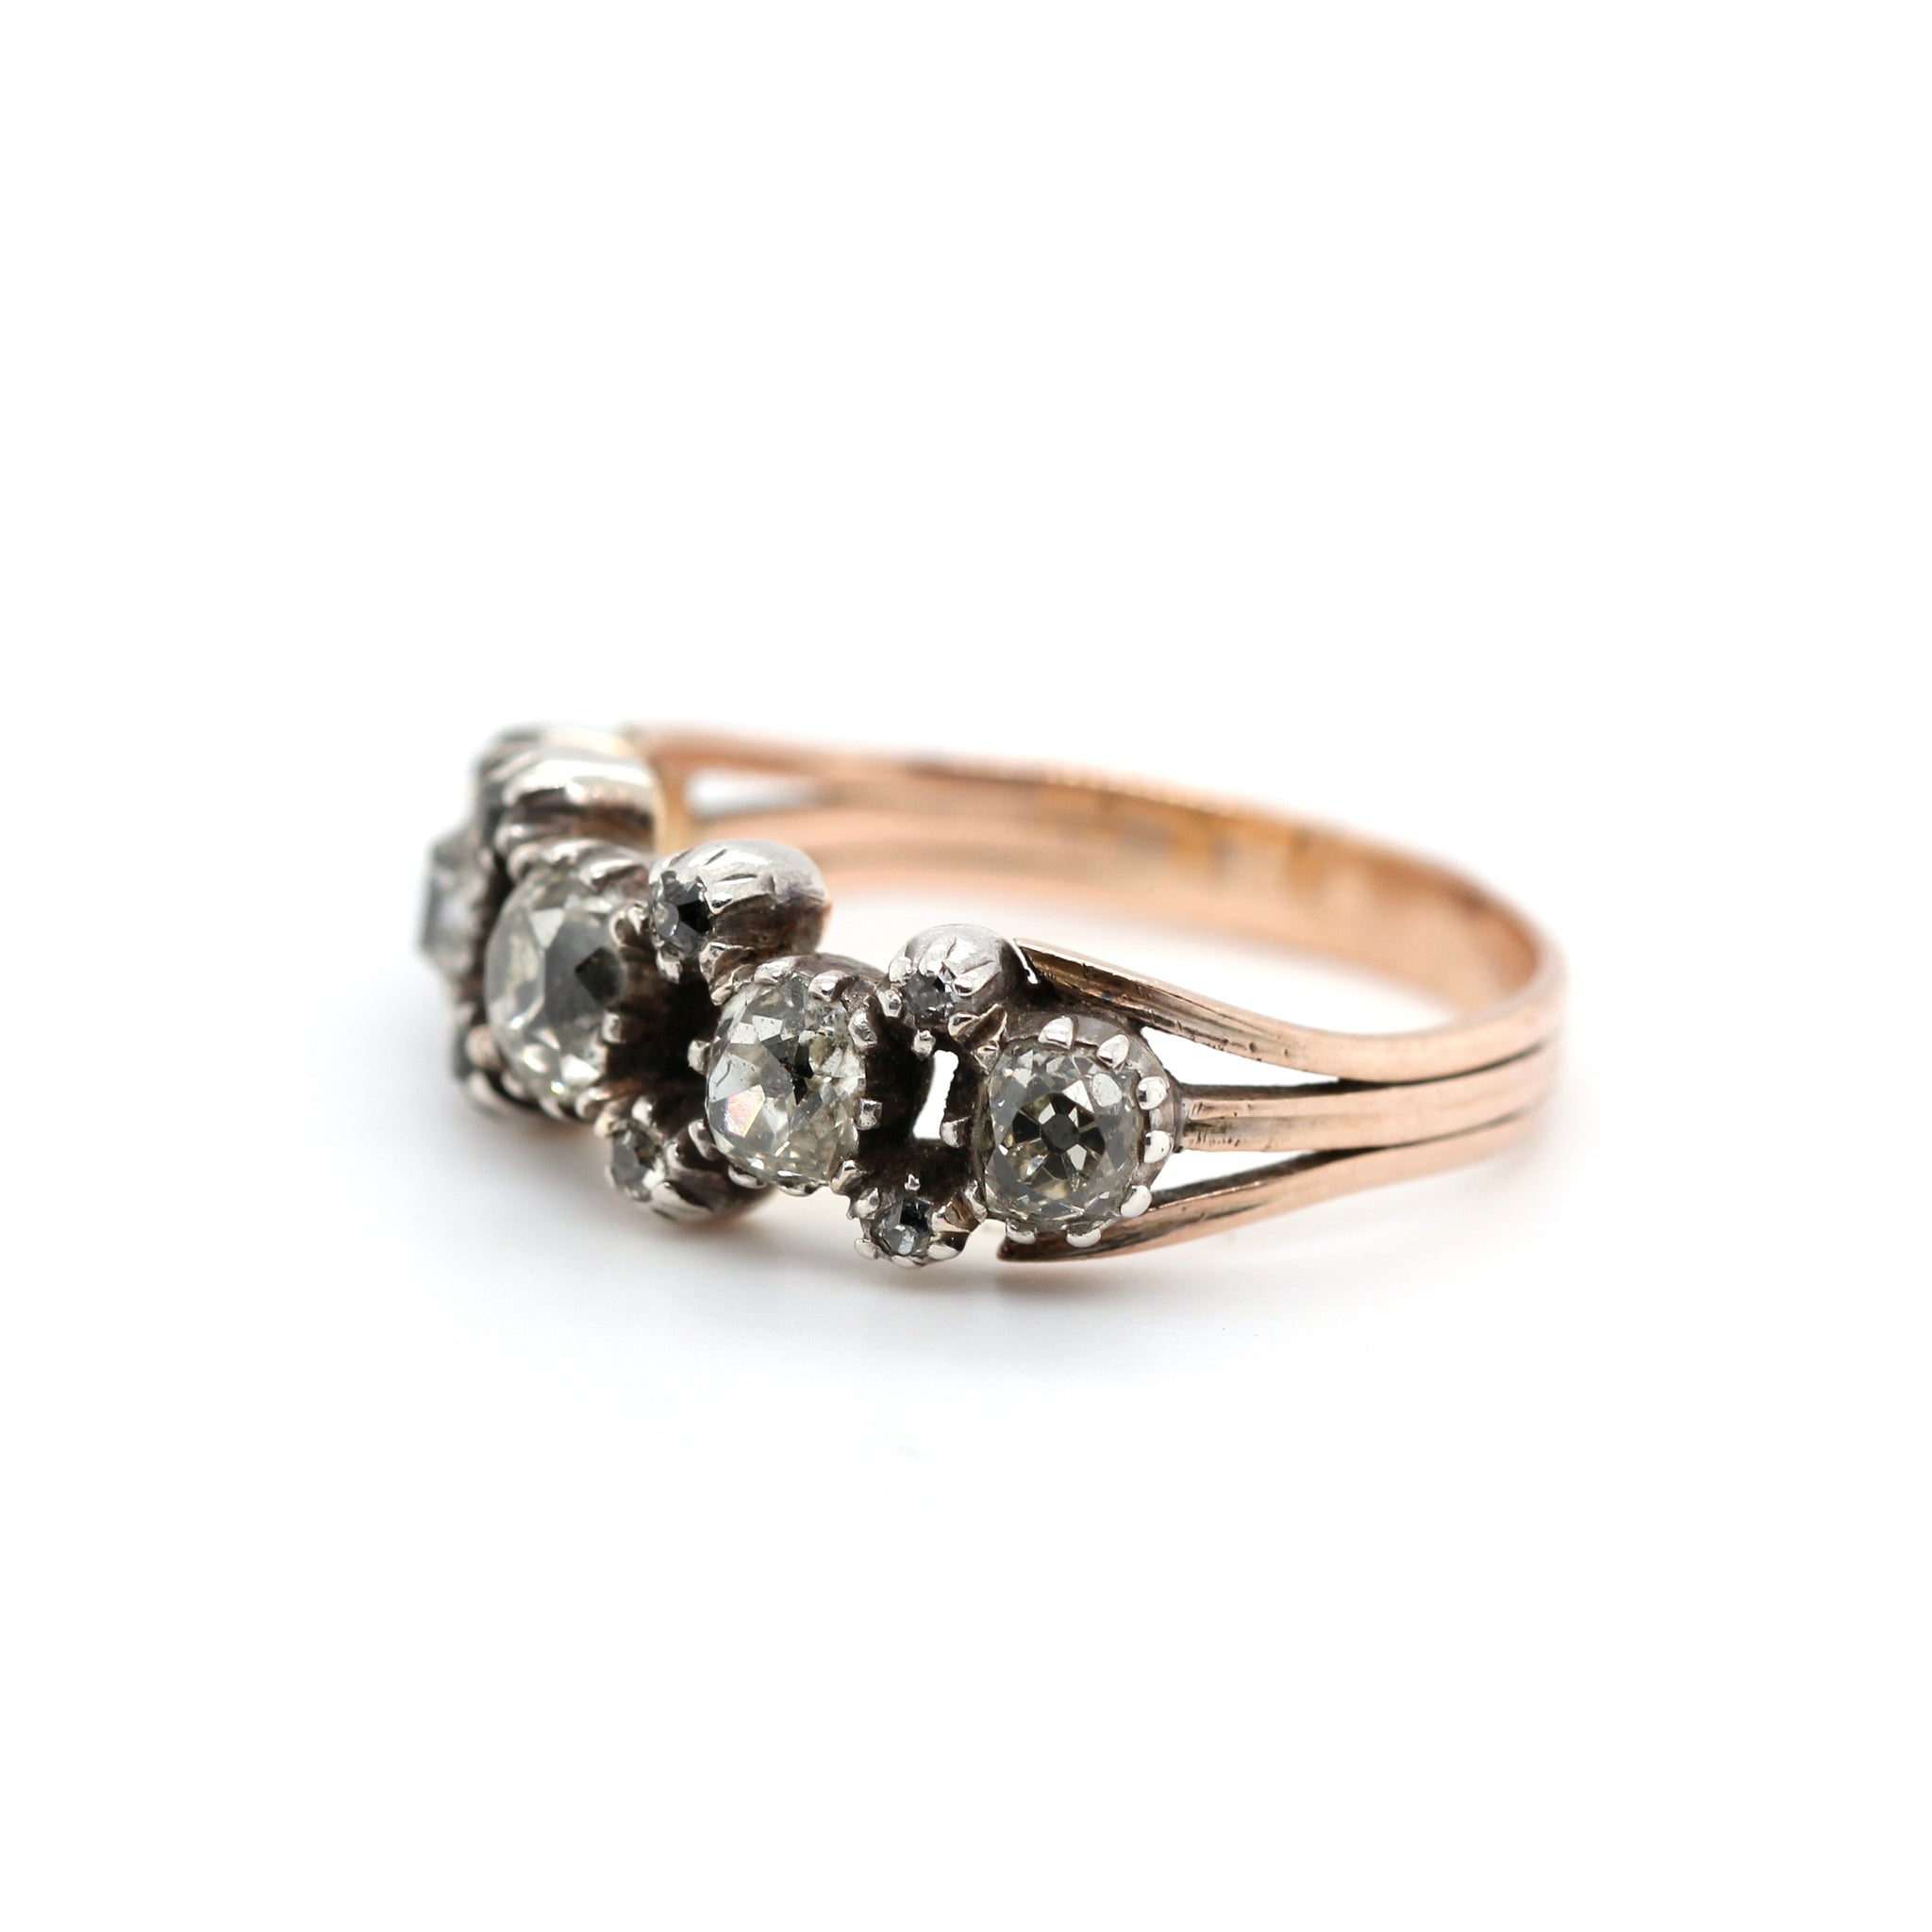 Georgian Old Cut Diamond Ring